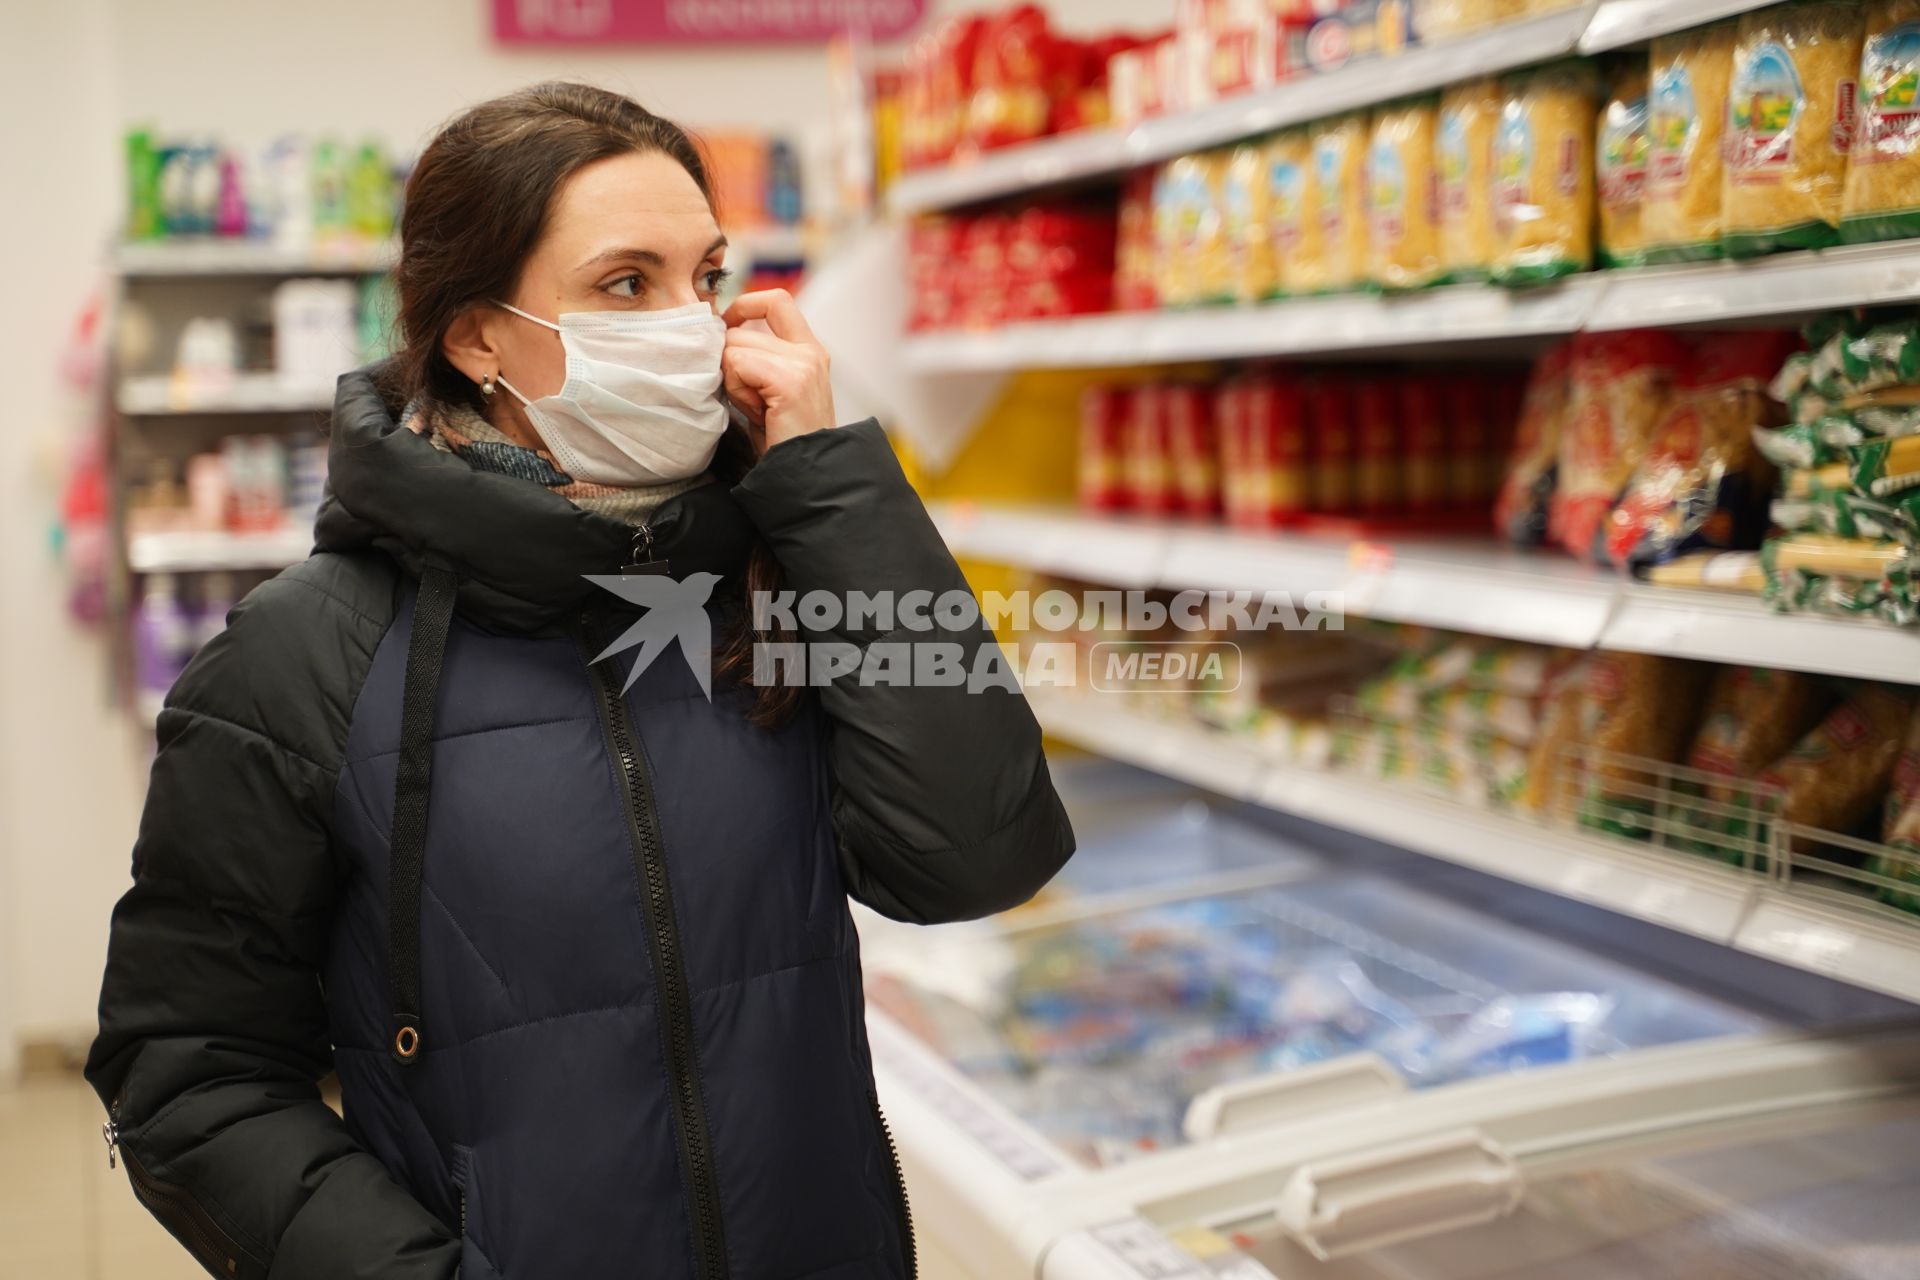 Самара. Девушка в медицинской маске в продуктовом магазине.